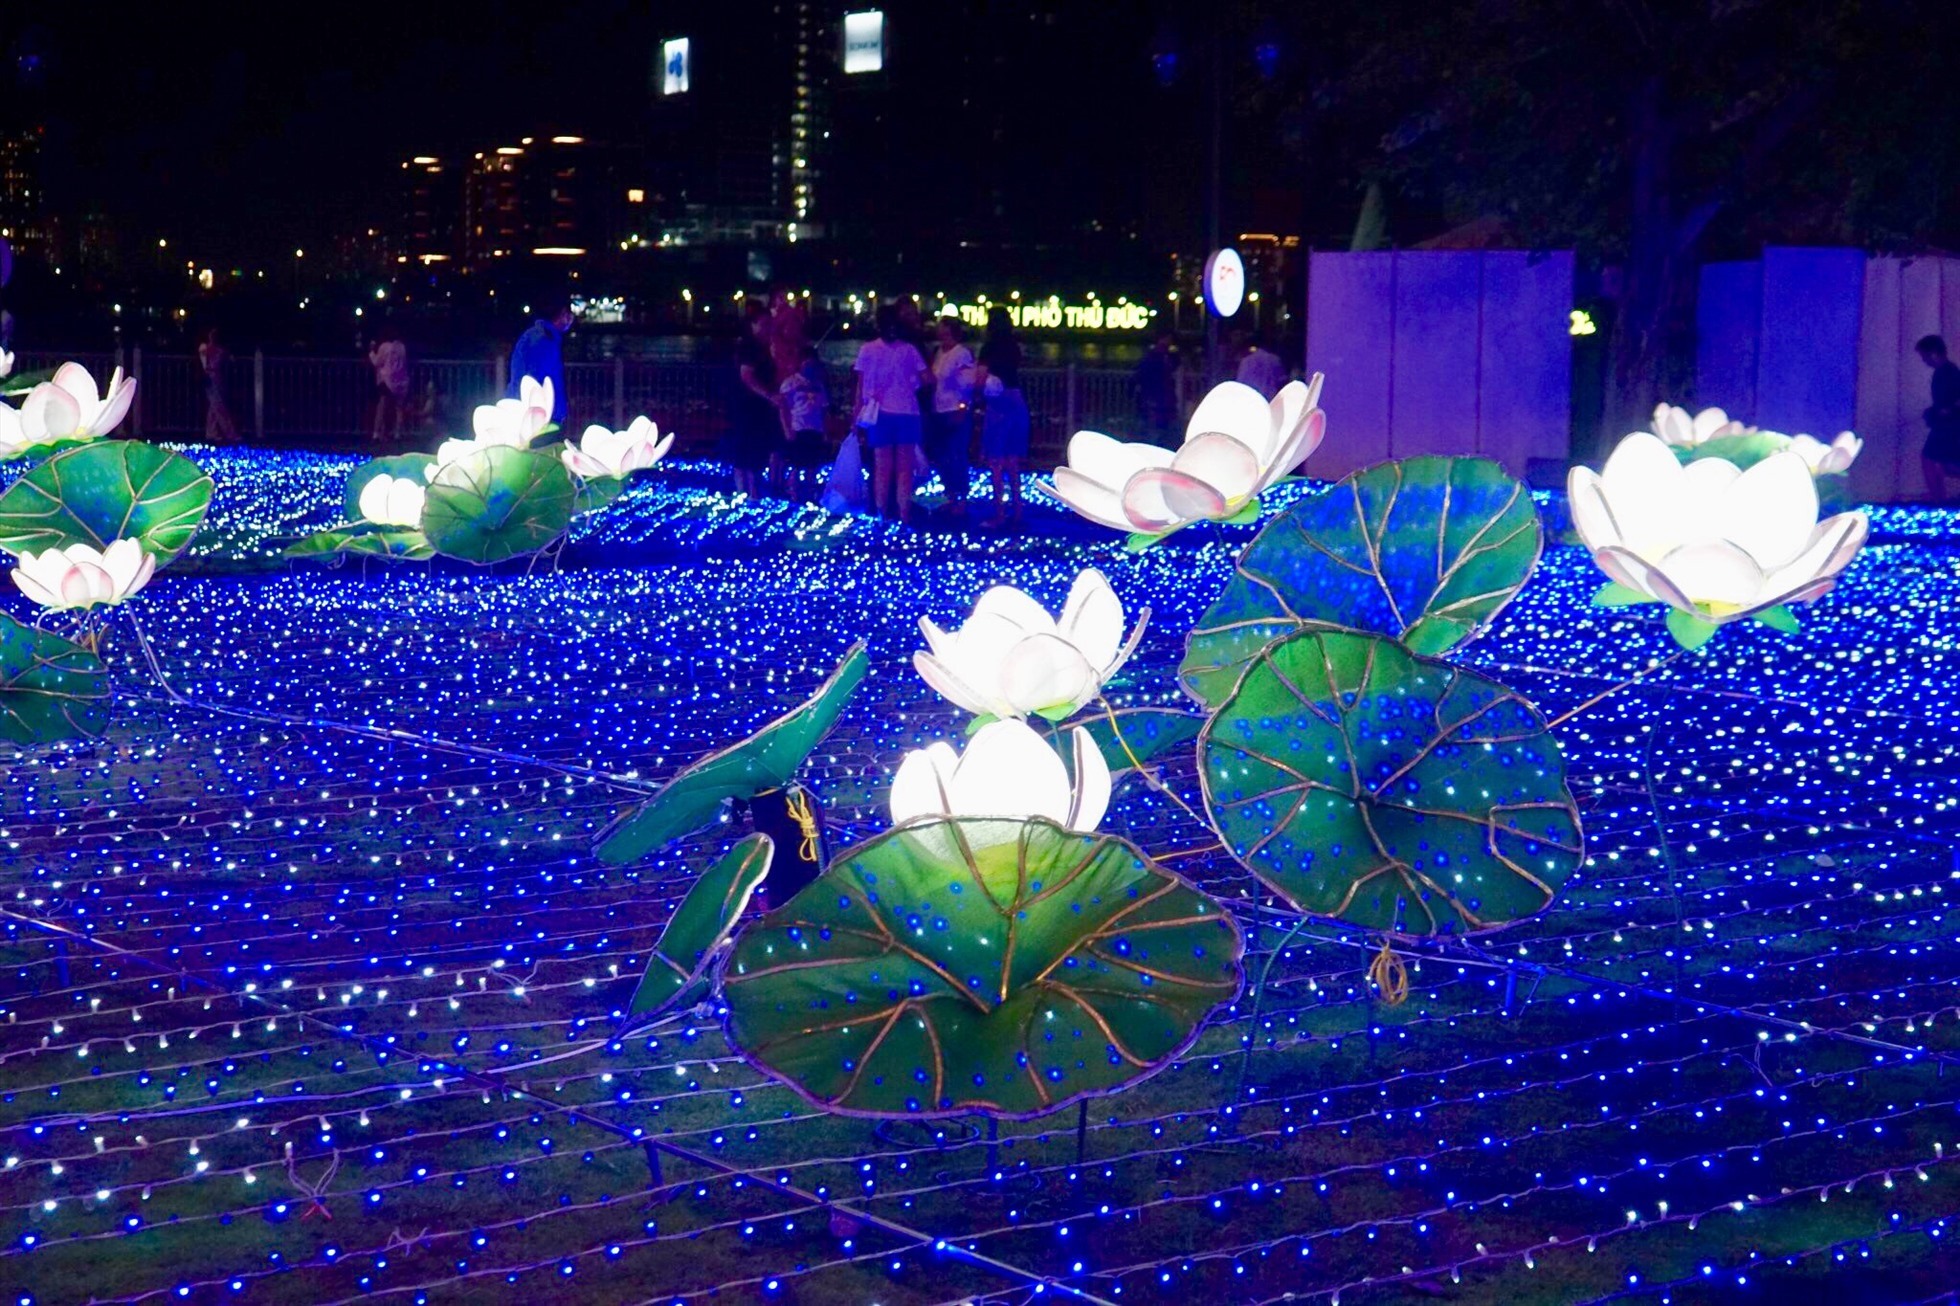 Hoạt động trang trí đèn nghệ thuật xoay quanh 02 chủ đề chính là Hồ Sen Việt Nam được lấy cảm hứng từ những đóa sen nở tươi tắn khoe sắc trên nền nước trong xanh và Khu vườn Sakura, loài hoa đặc trưng của đất nước Nhật Bản. Tất cả sẽ được lồng ghép và truyền tải sống động nhất qua công nghệ chiếu sáng rực rỡ.